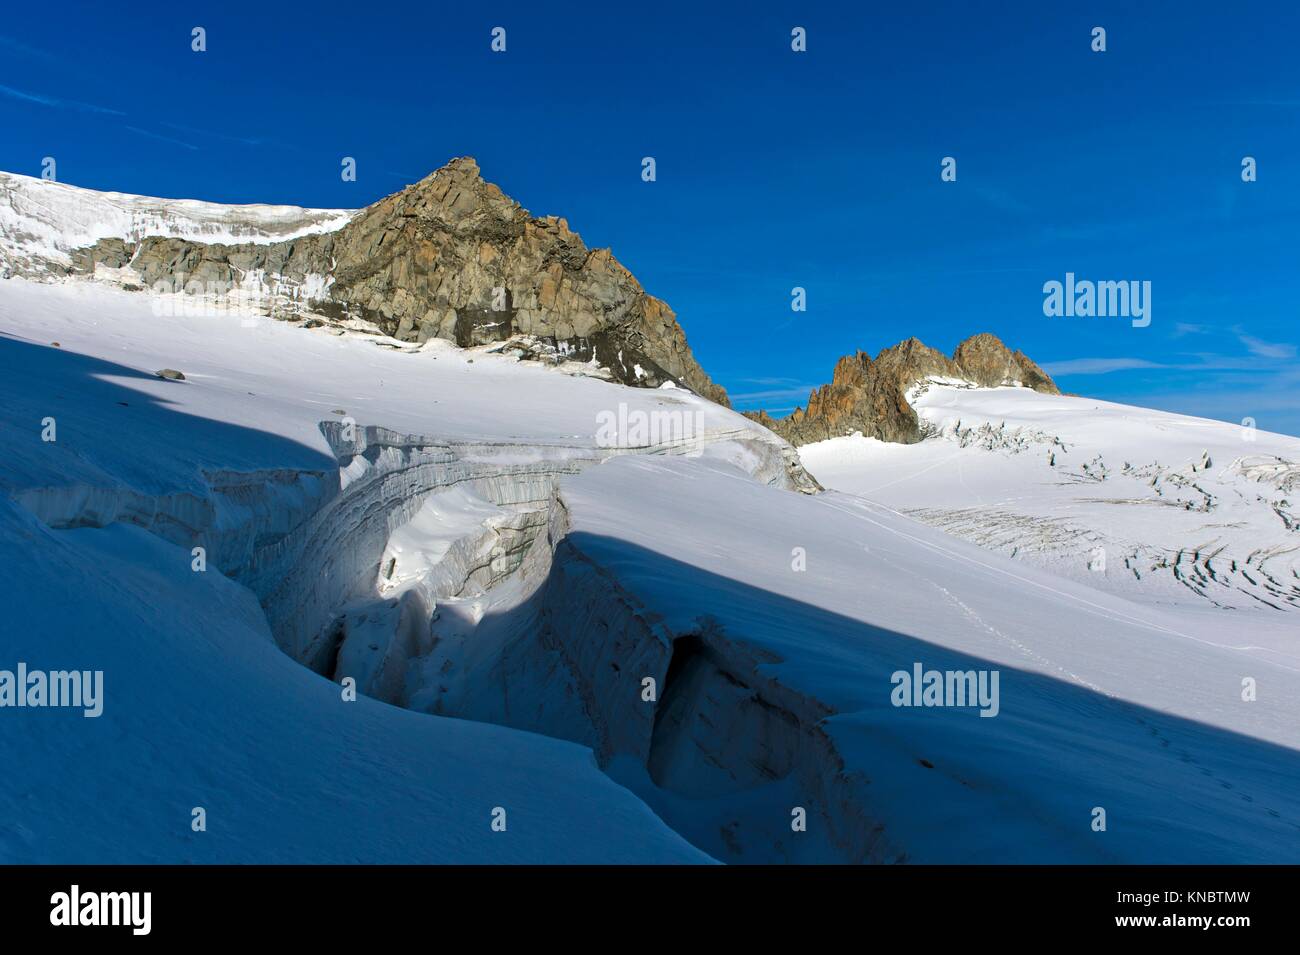 Crevasse on the glacier Plateau du Trient, peaks Tete Blanche and Aiguille du Tour behind, Valais, Switzerland. Stock Photo